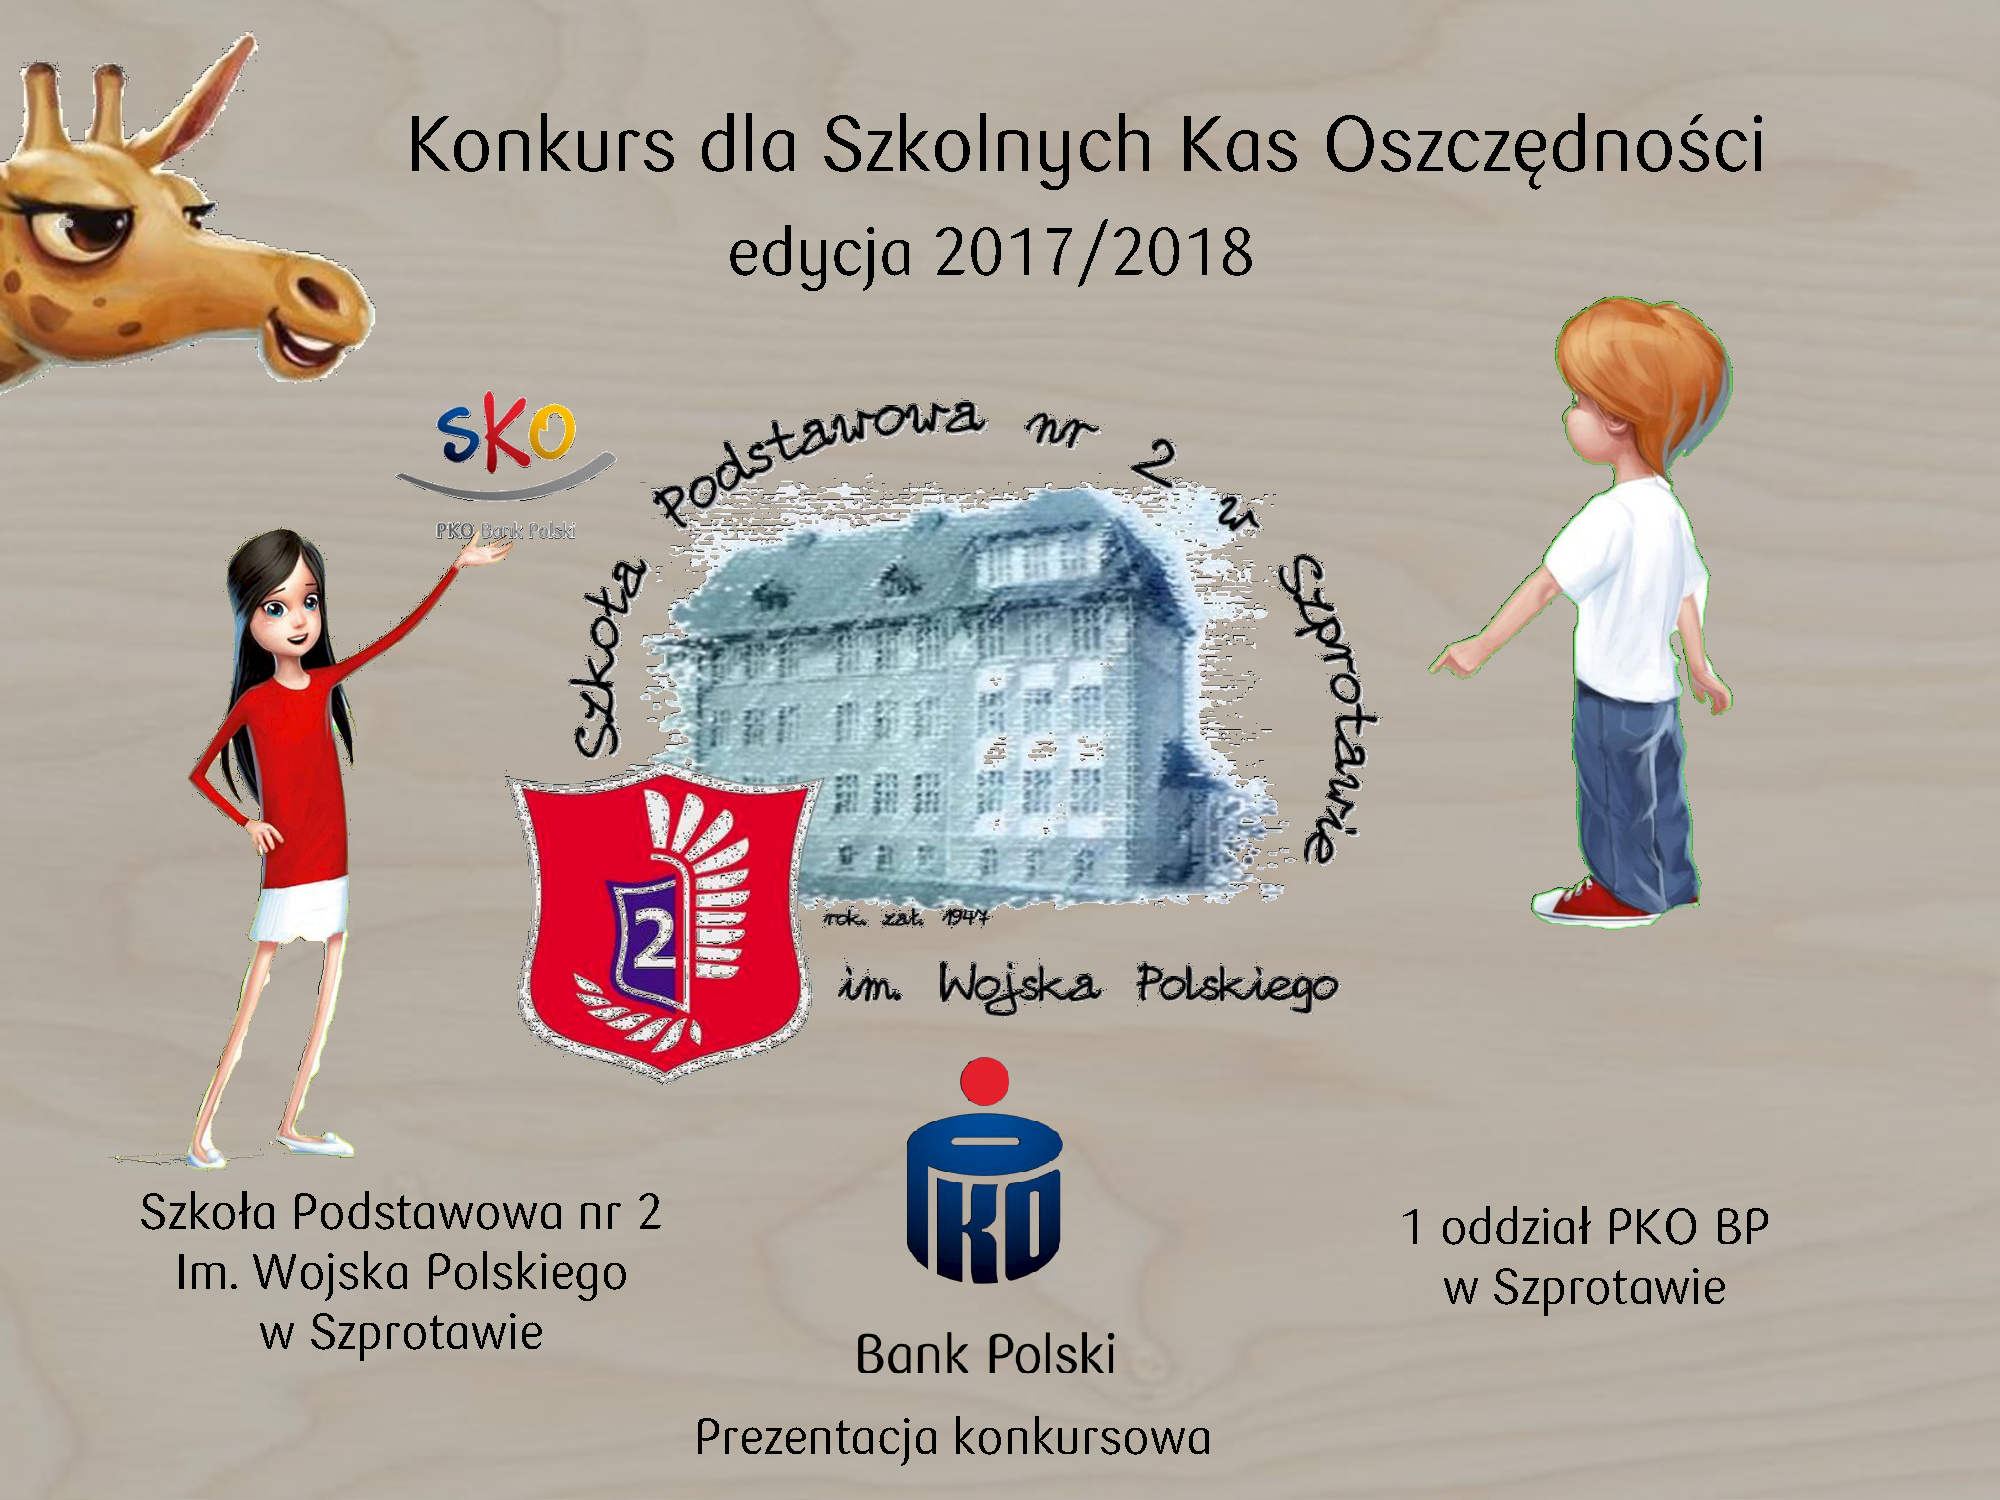 Szkoła Podstawowa nr 2 im. Wojska Polskiego w Szprotawie